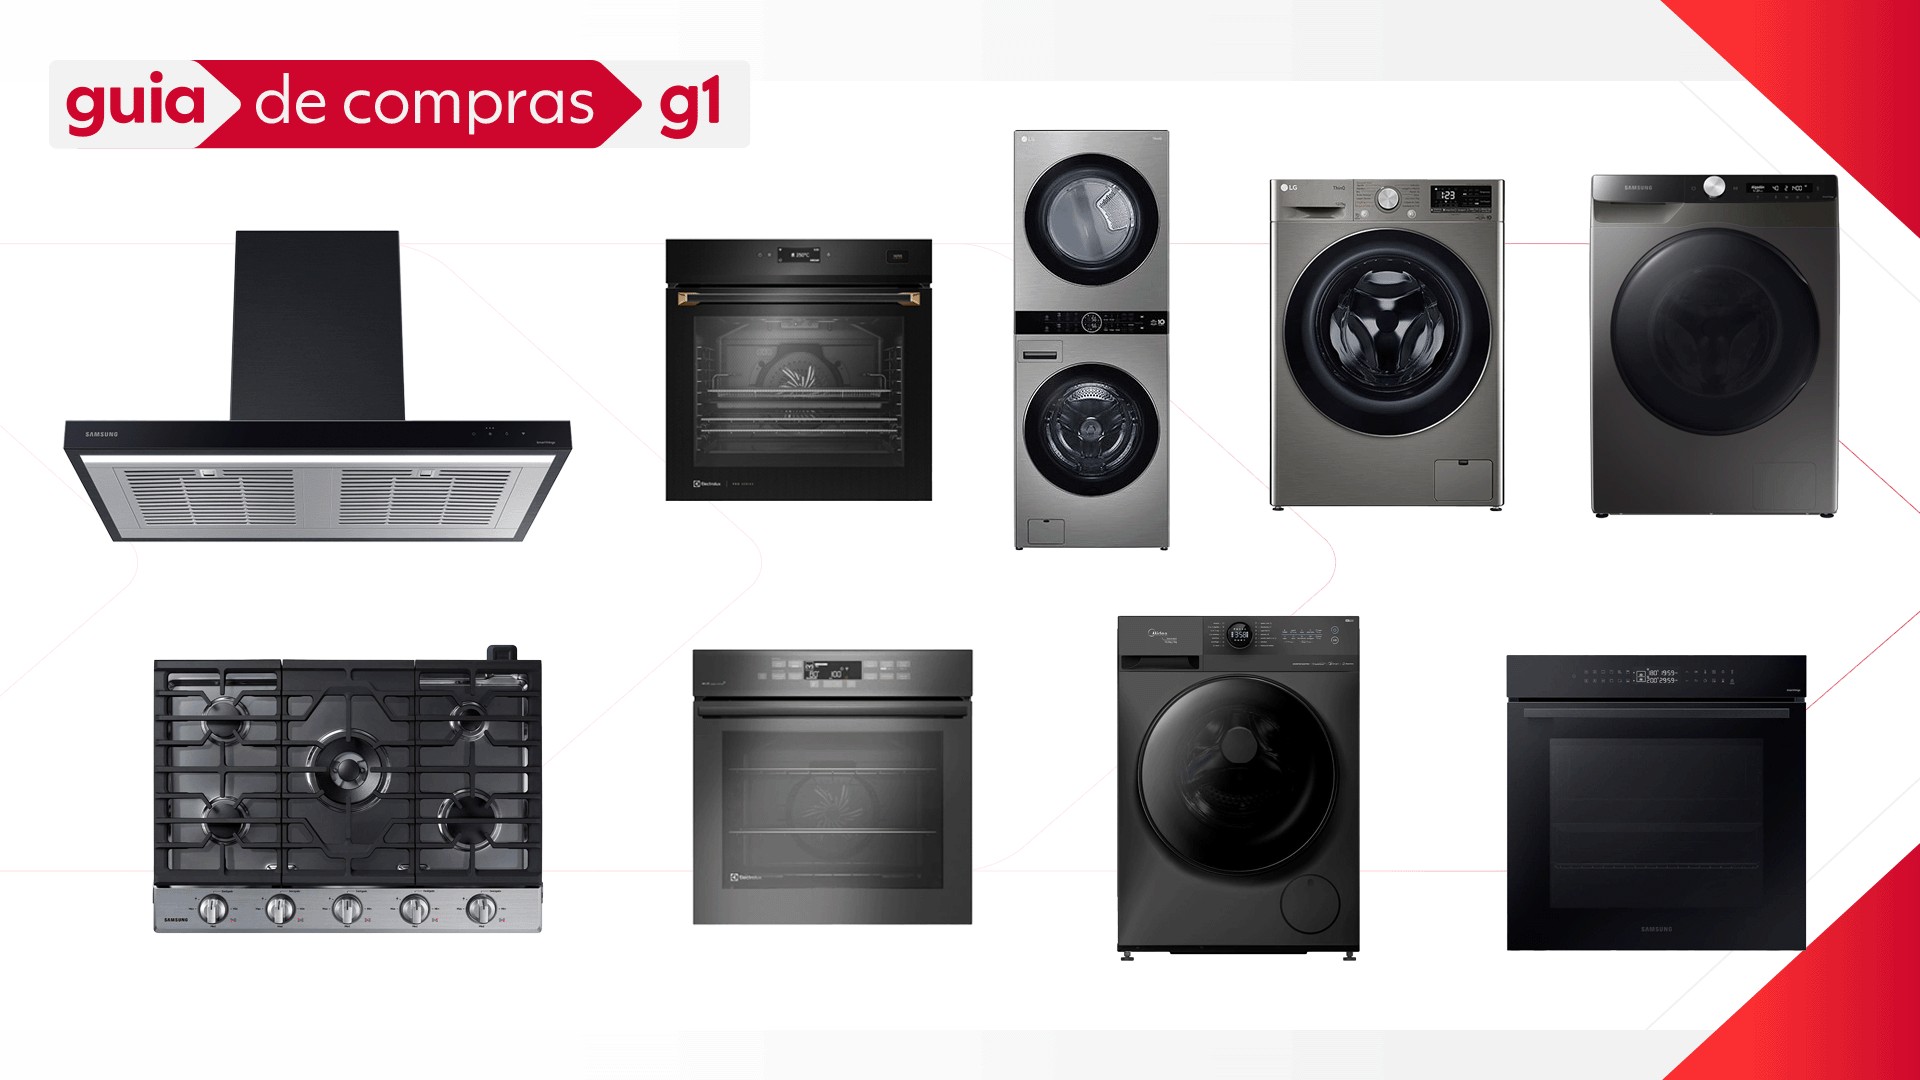 Forno, coifa, lava roupas com wi-fi: qual a diferença dos eletrodomésticos inteligentes para os normais?